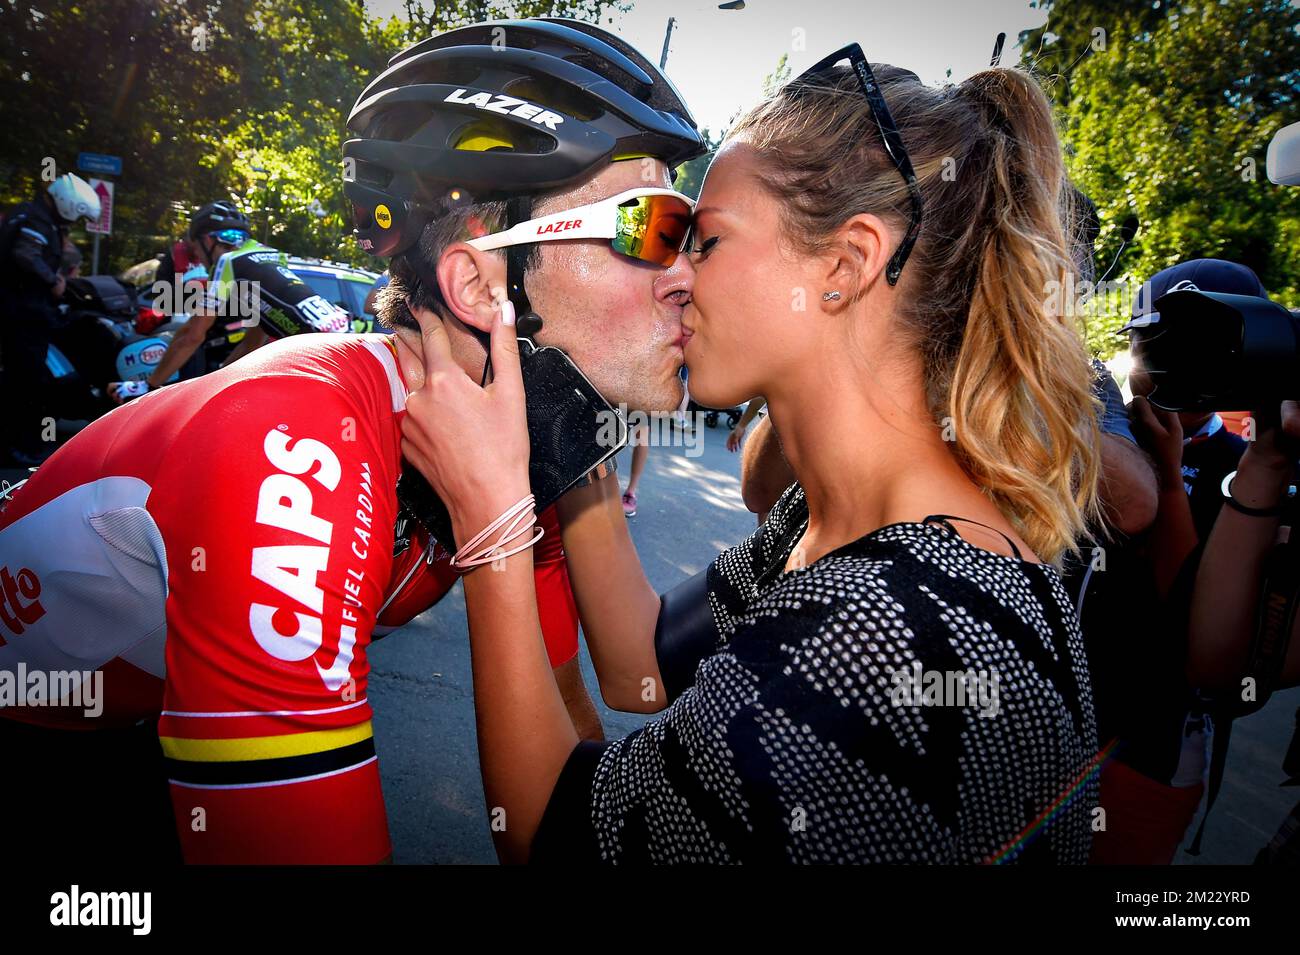 Marion Rousse, petite amie de Tony Gallopin de France, à bord de Lotto  Belisol, est photographiée sur le podium alors qu'elle donne le prix de la  combativité lors du Tour de France,